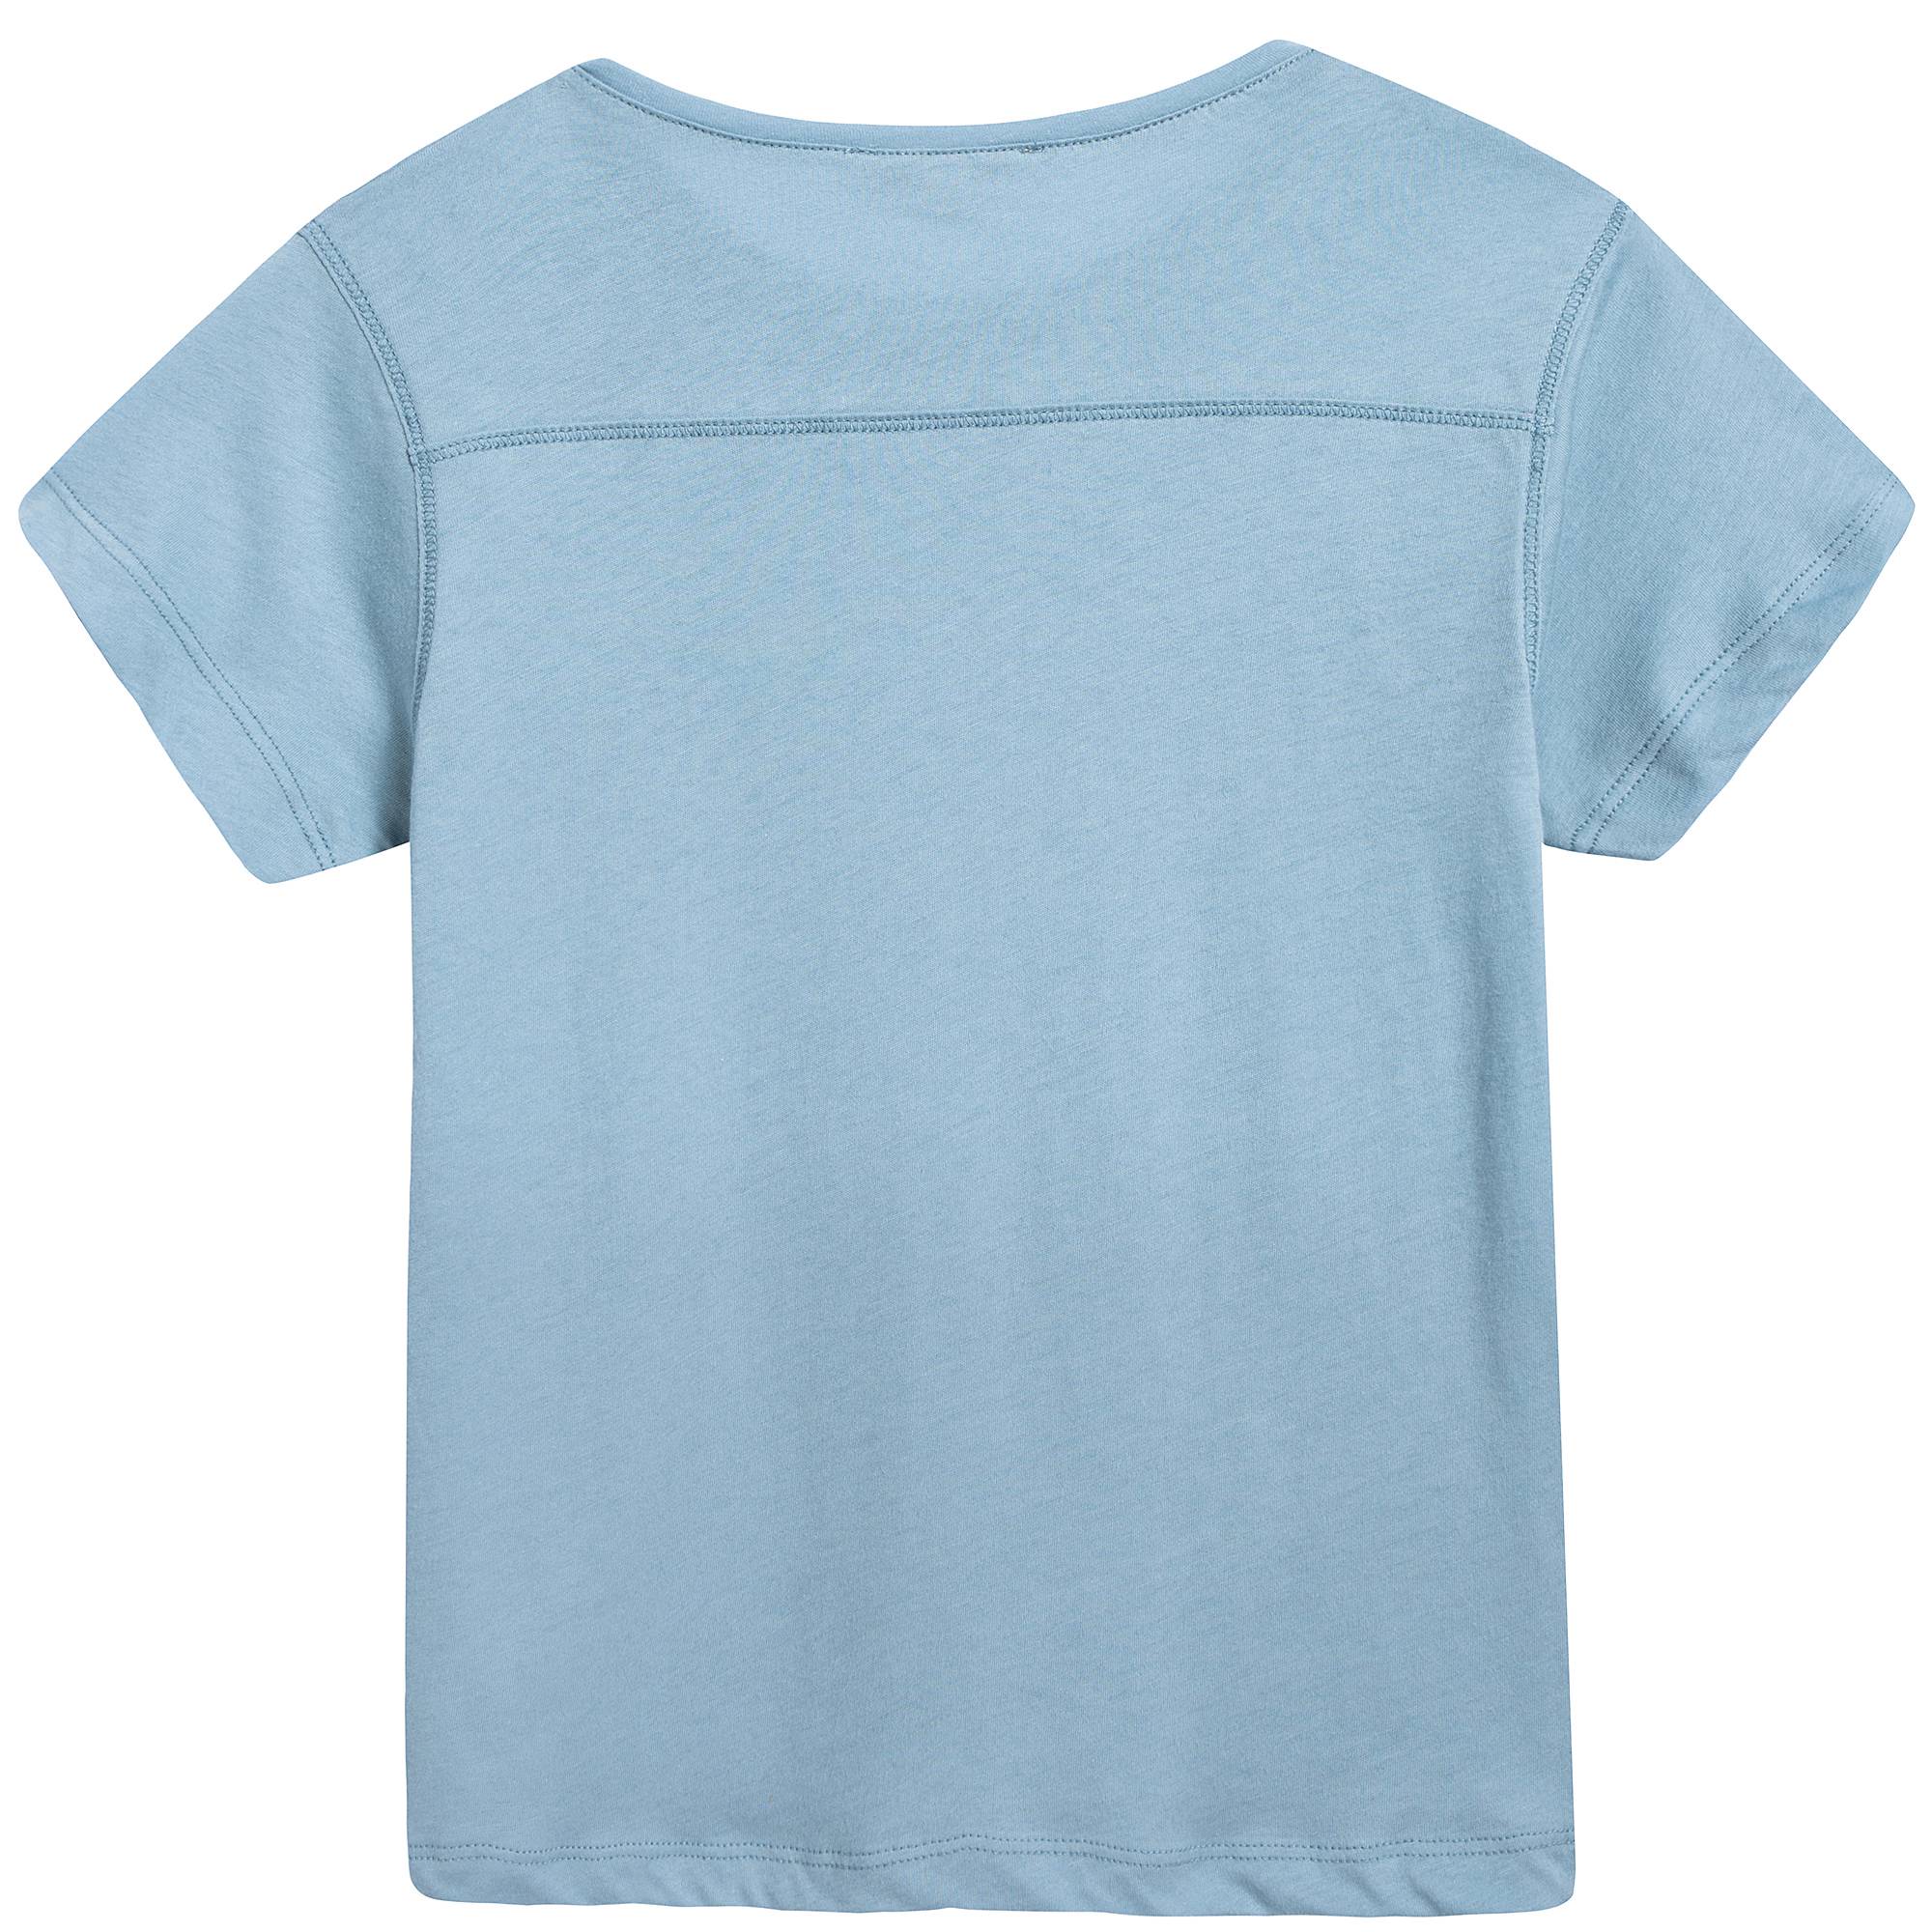 Boys & Girls Cornflower  Cotton  Jersey  T-shirt